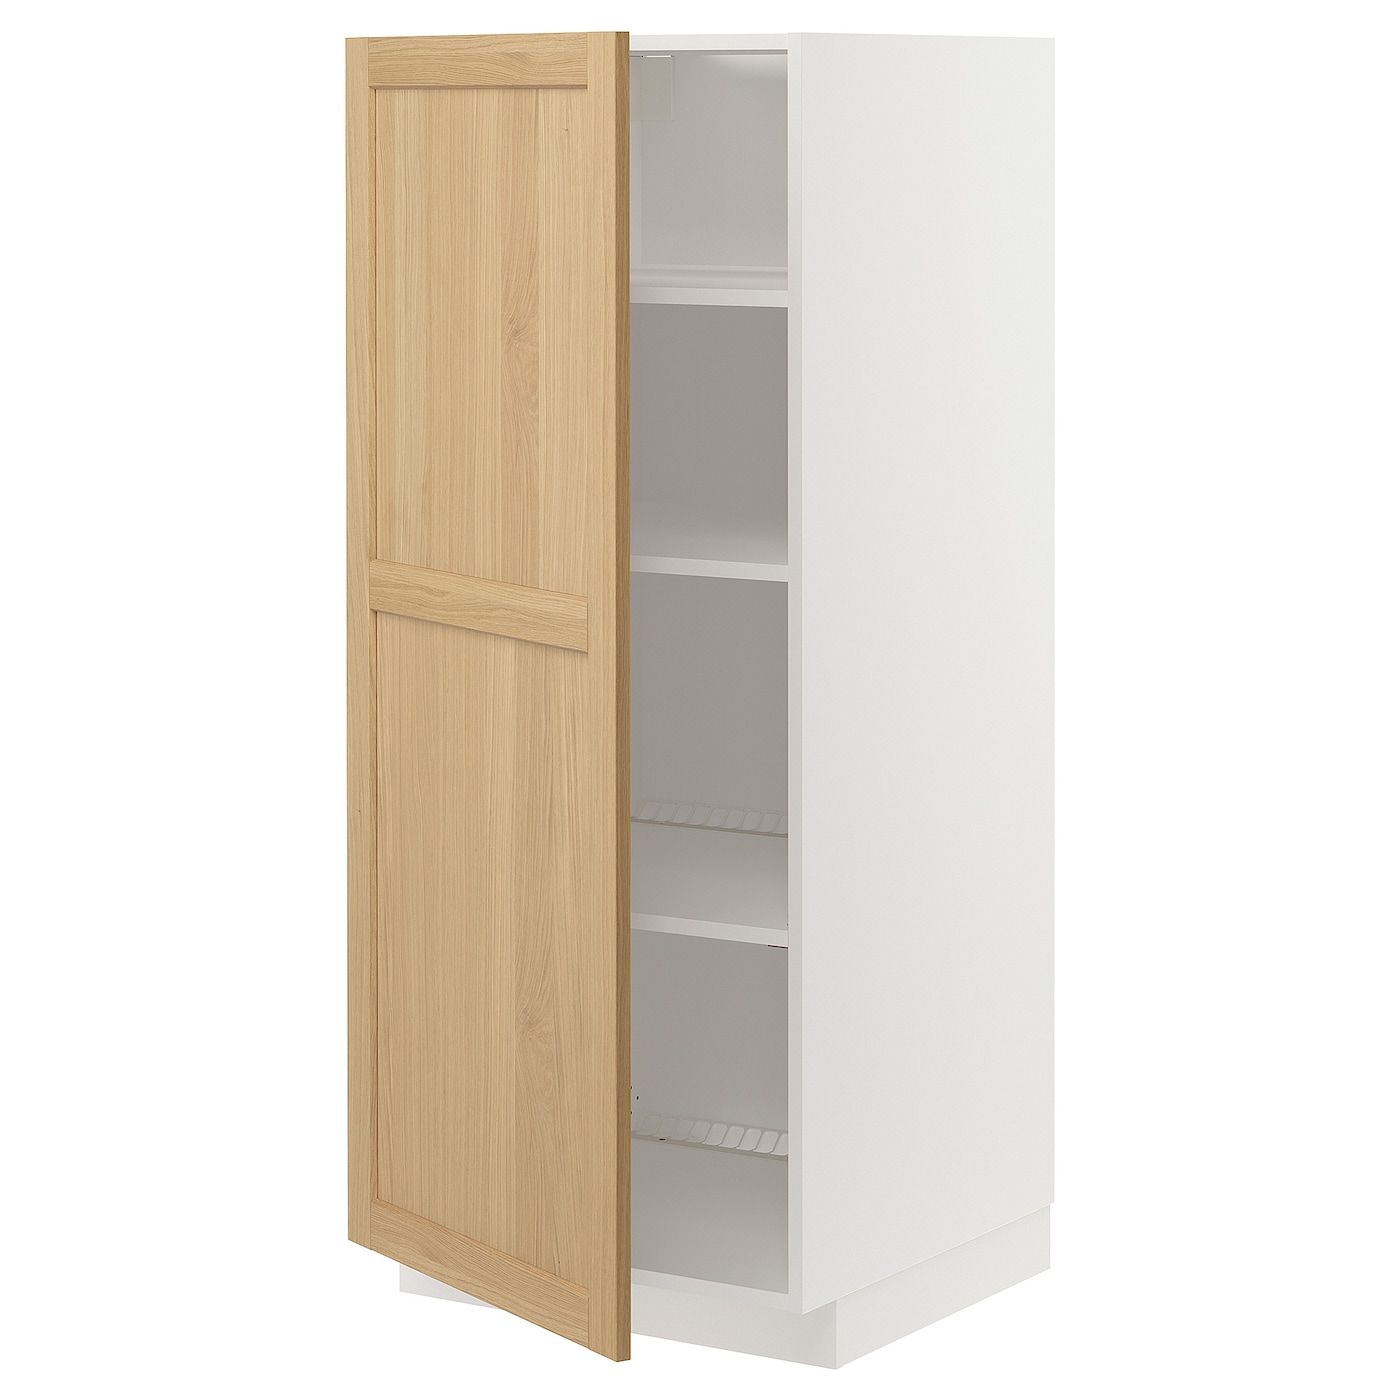 Напольный шкаф - METOD IKEA/ МЕТОД ИКЕА,  140х60хх60  см, белый/под беленый дуб